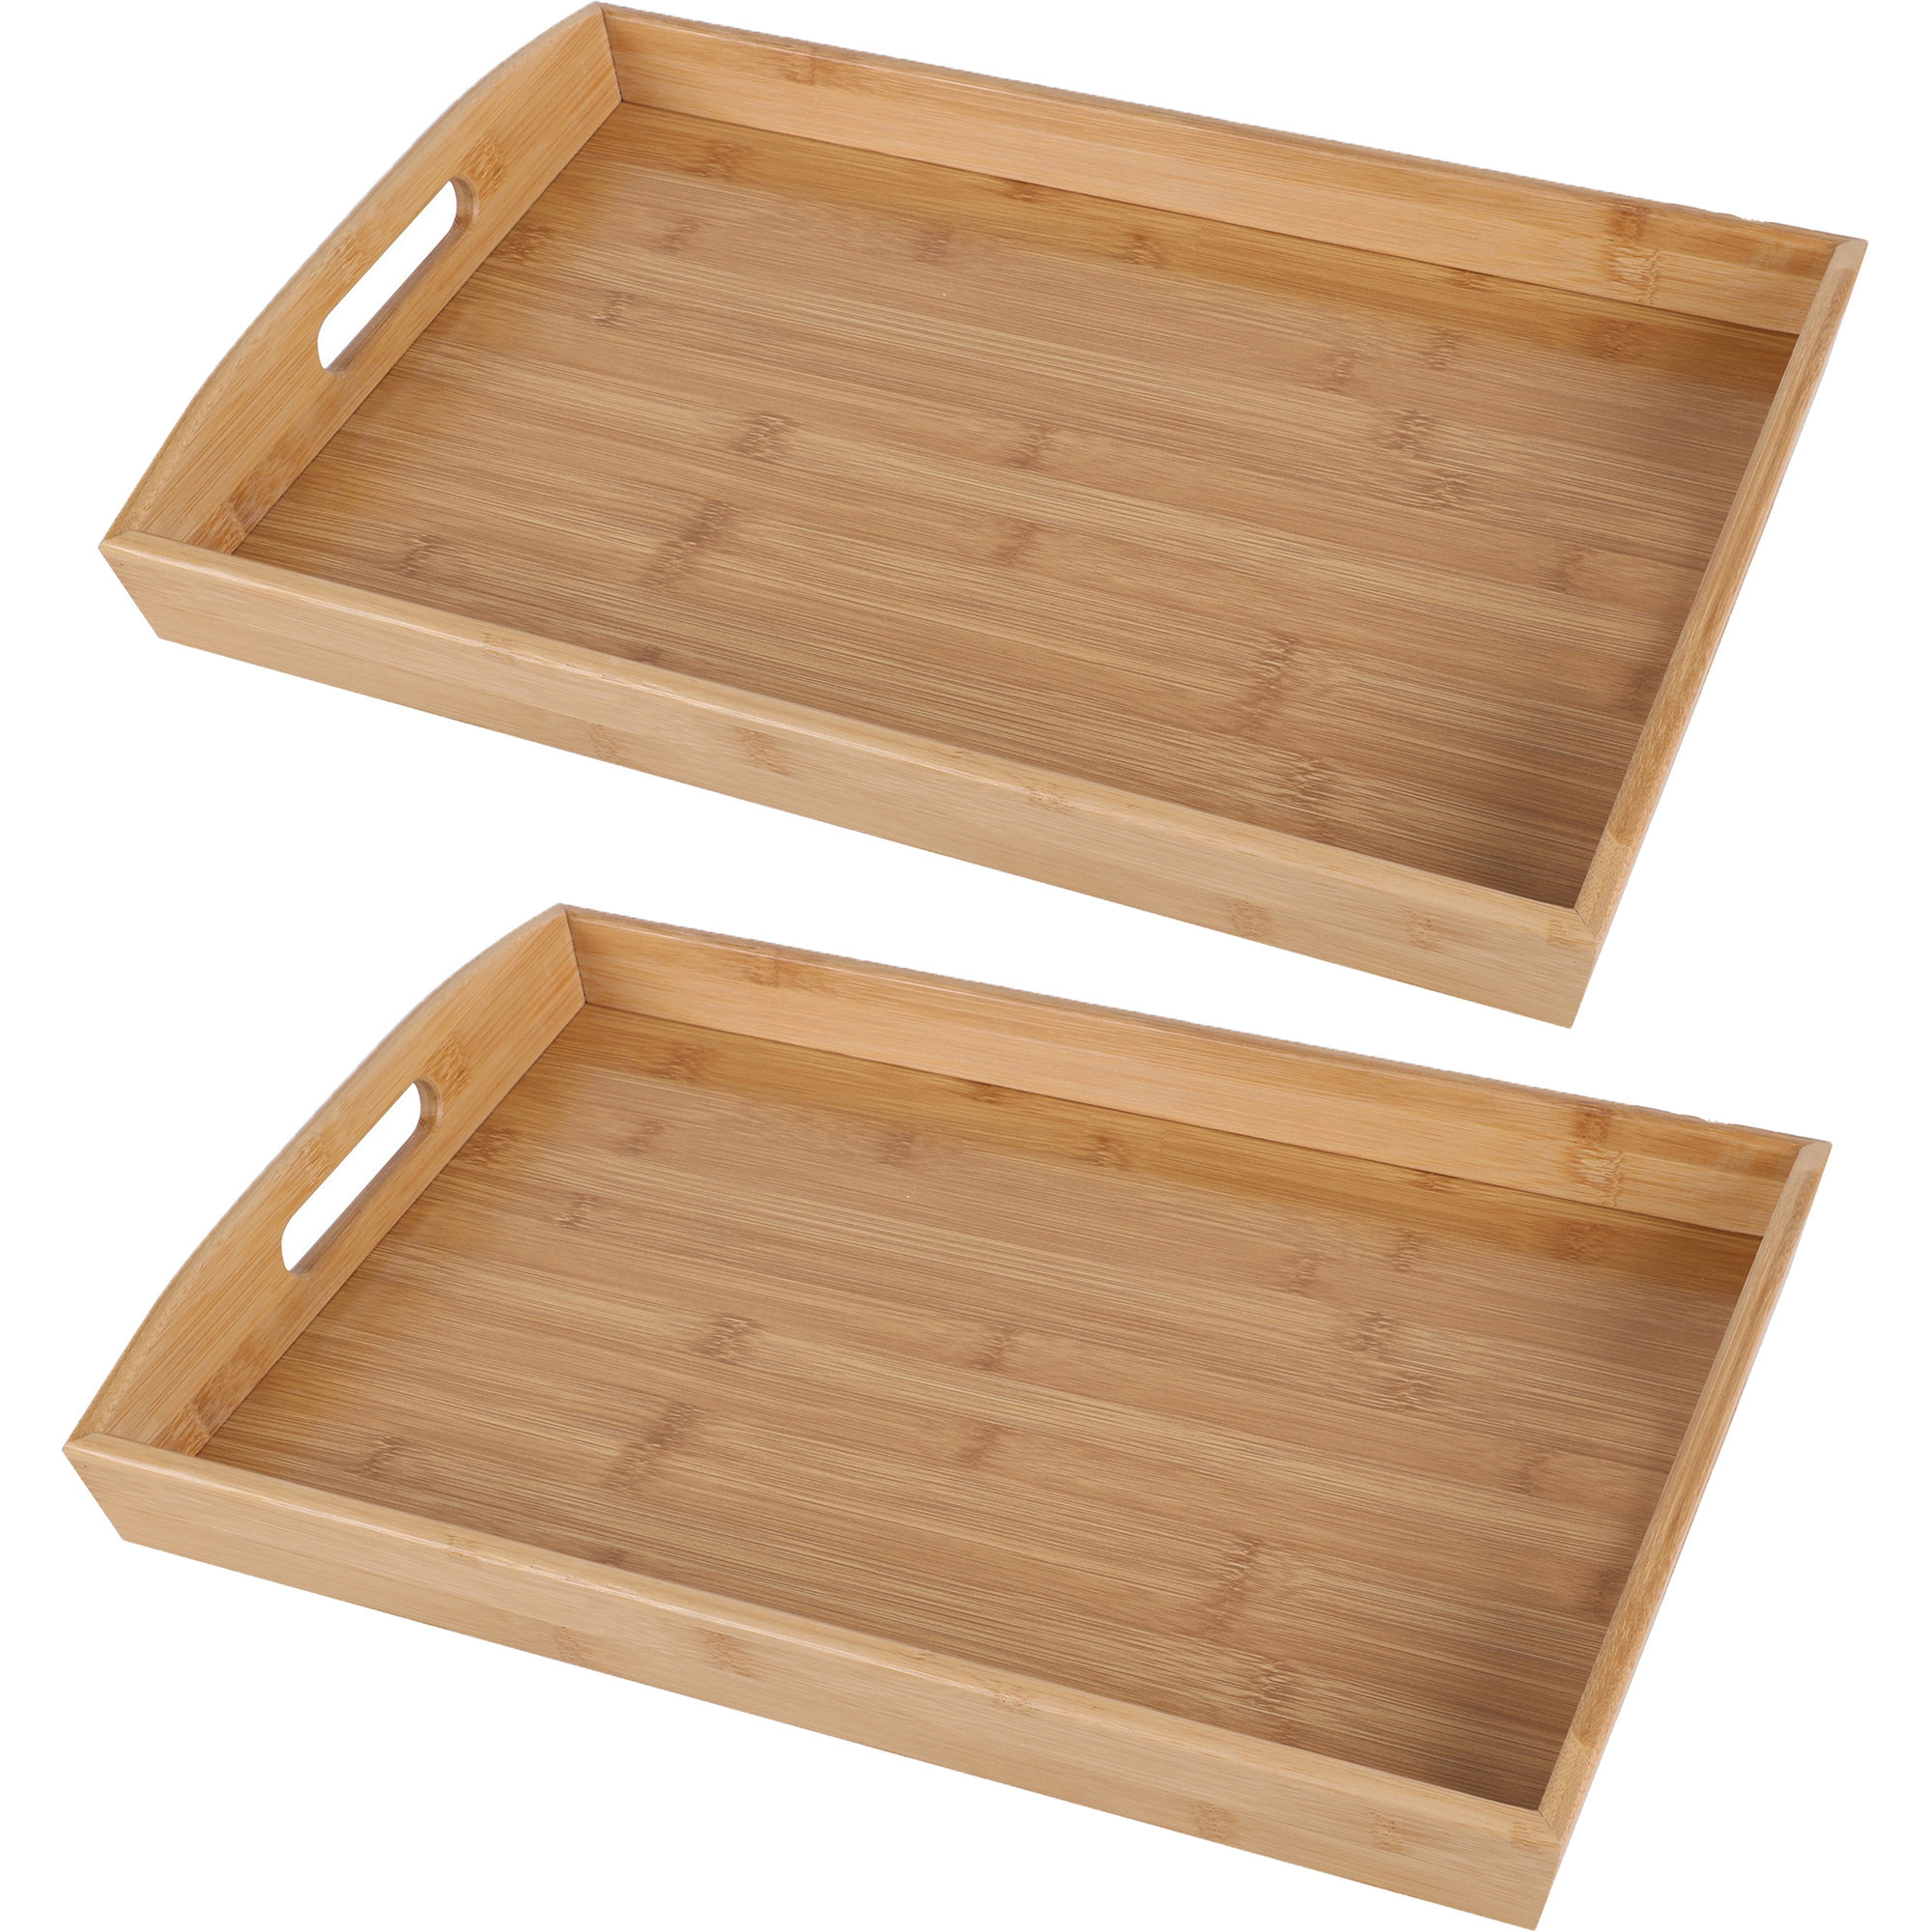 Bambou & Co Dienblad/serveerblad Breakfast - 2x - rechthoek - bamboe hout - x 29 x 4 cm - met handvaten -